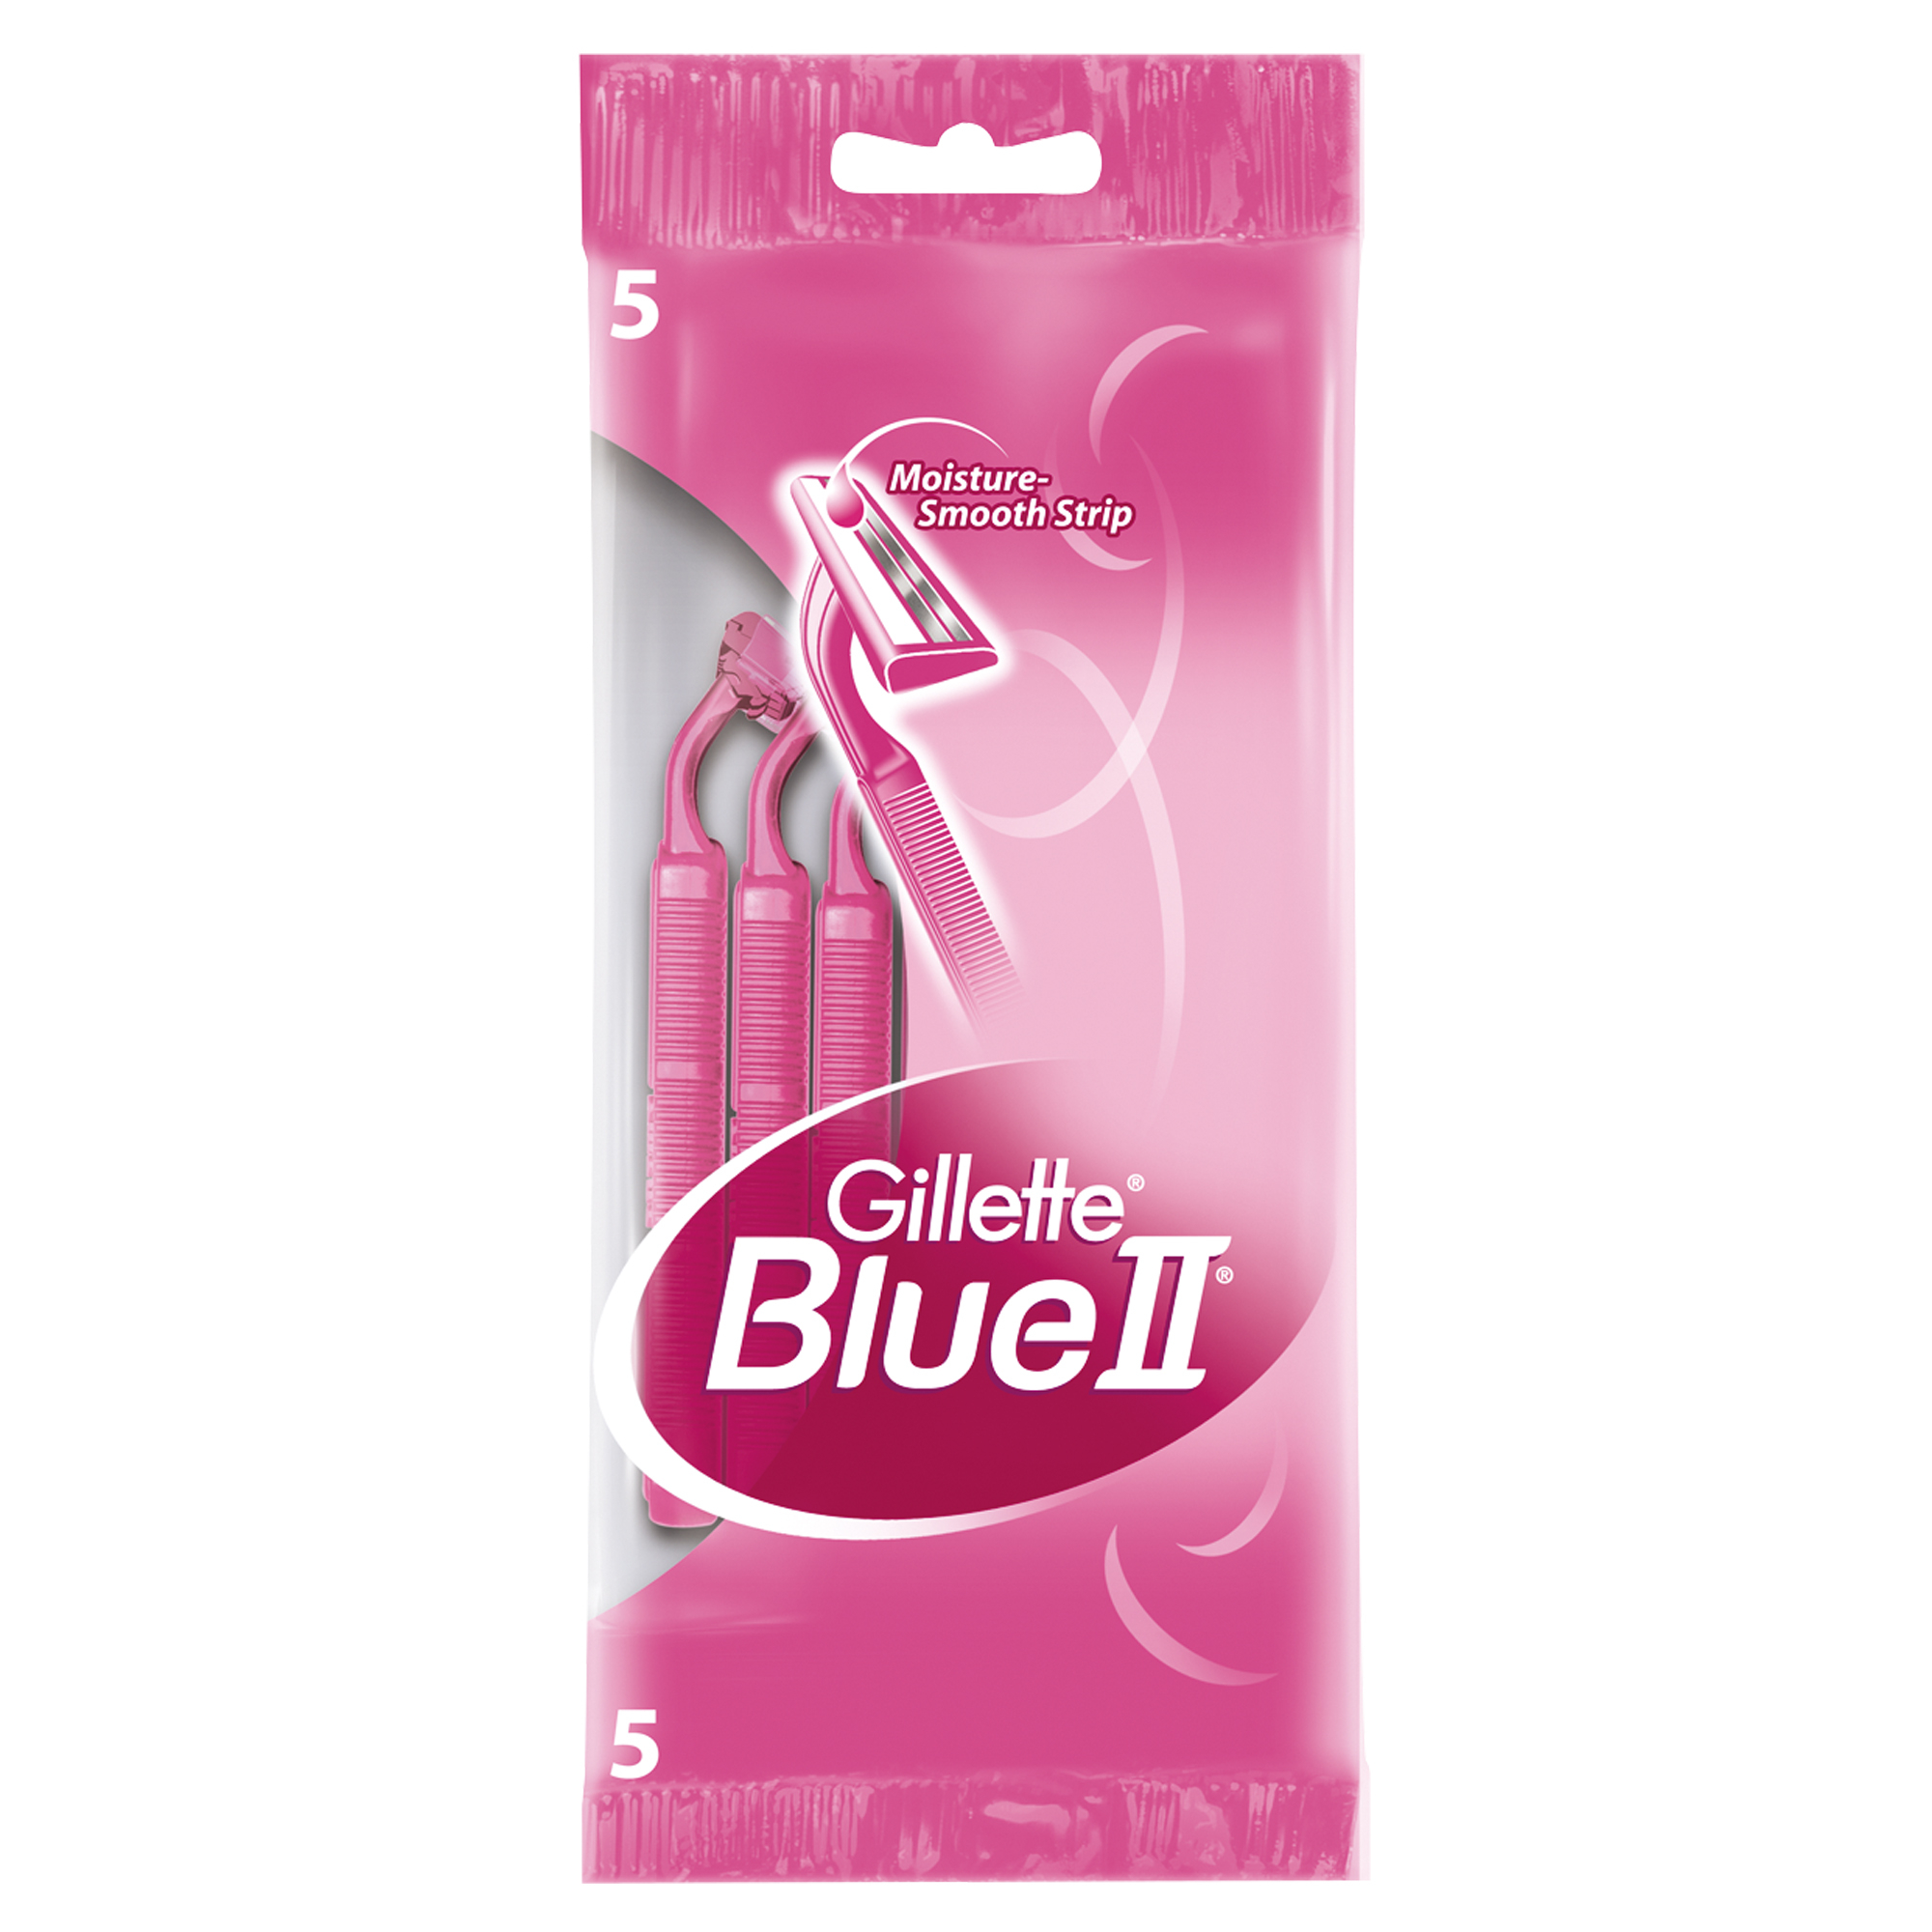 одноразовая женская бритва gillette blue 2 5 шт 2 уп Одноразовая женская бритва Gillette Blue 2, 5 шт